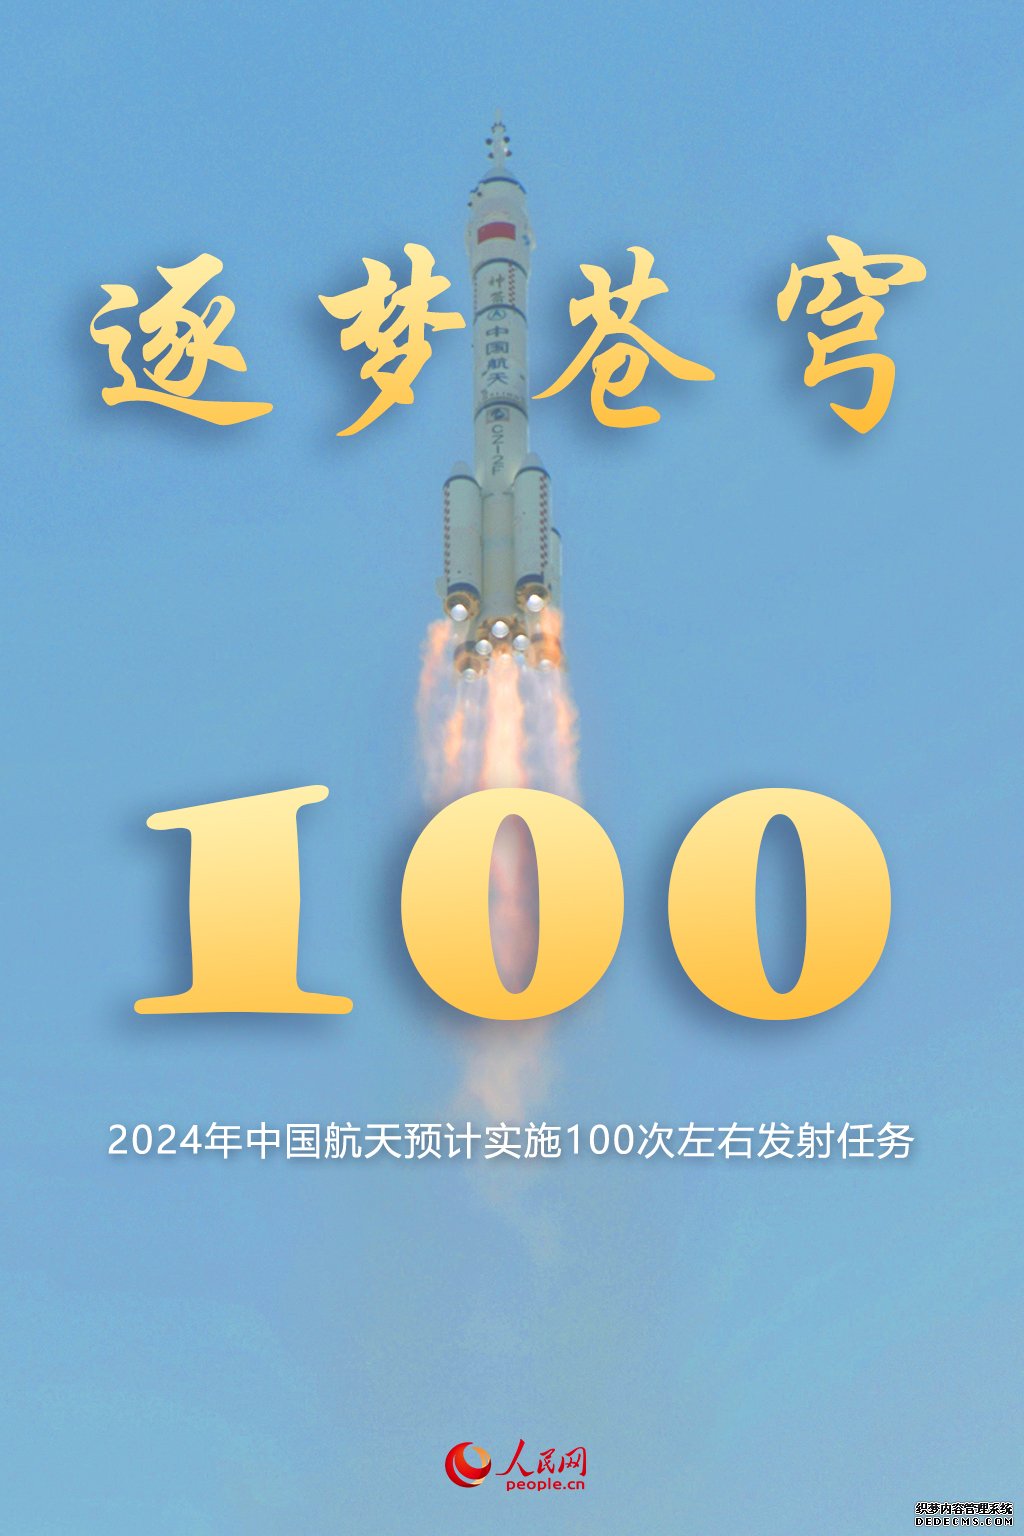 2024年中国航天预计实施100次左右发射任务